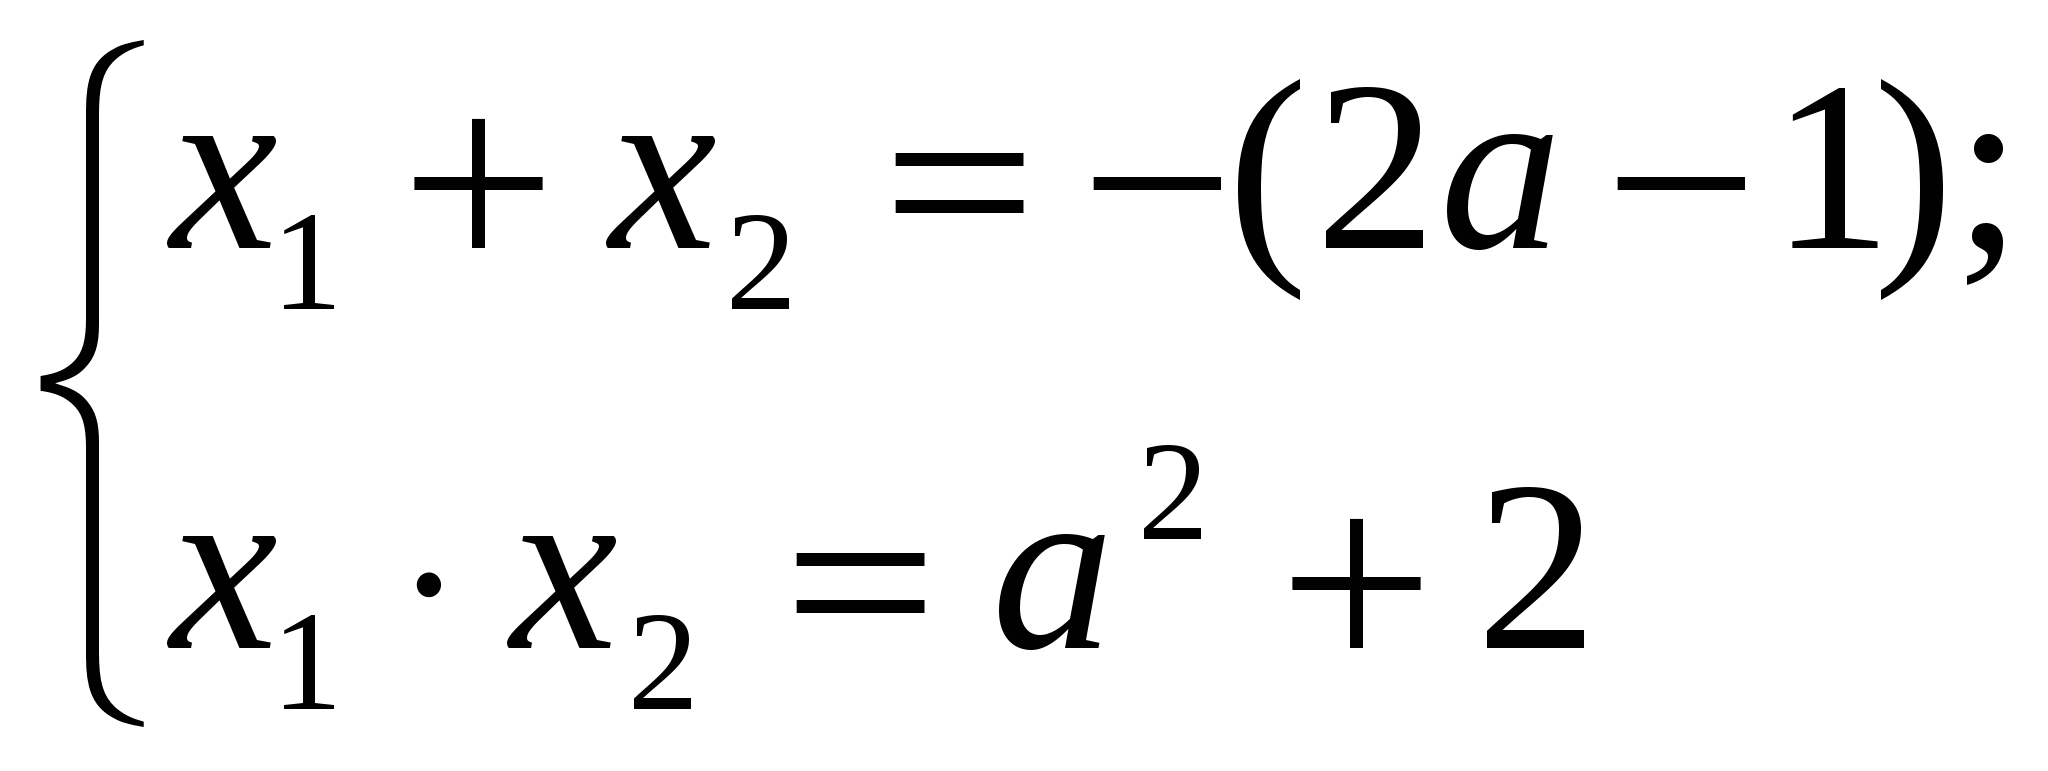 Итоговая работа по теме: Многоуровневая система задач с параметрами по теме Квадратные уравнения в курсе алгебры 8 класса